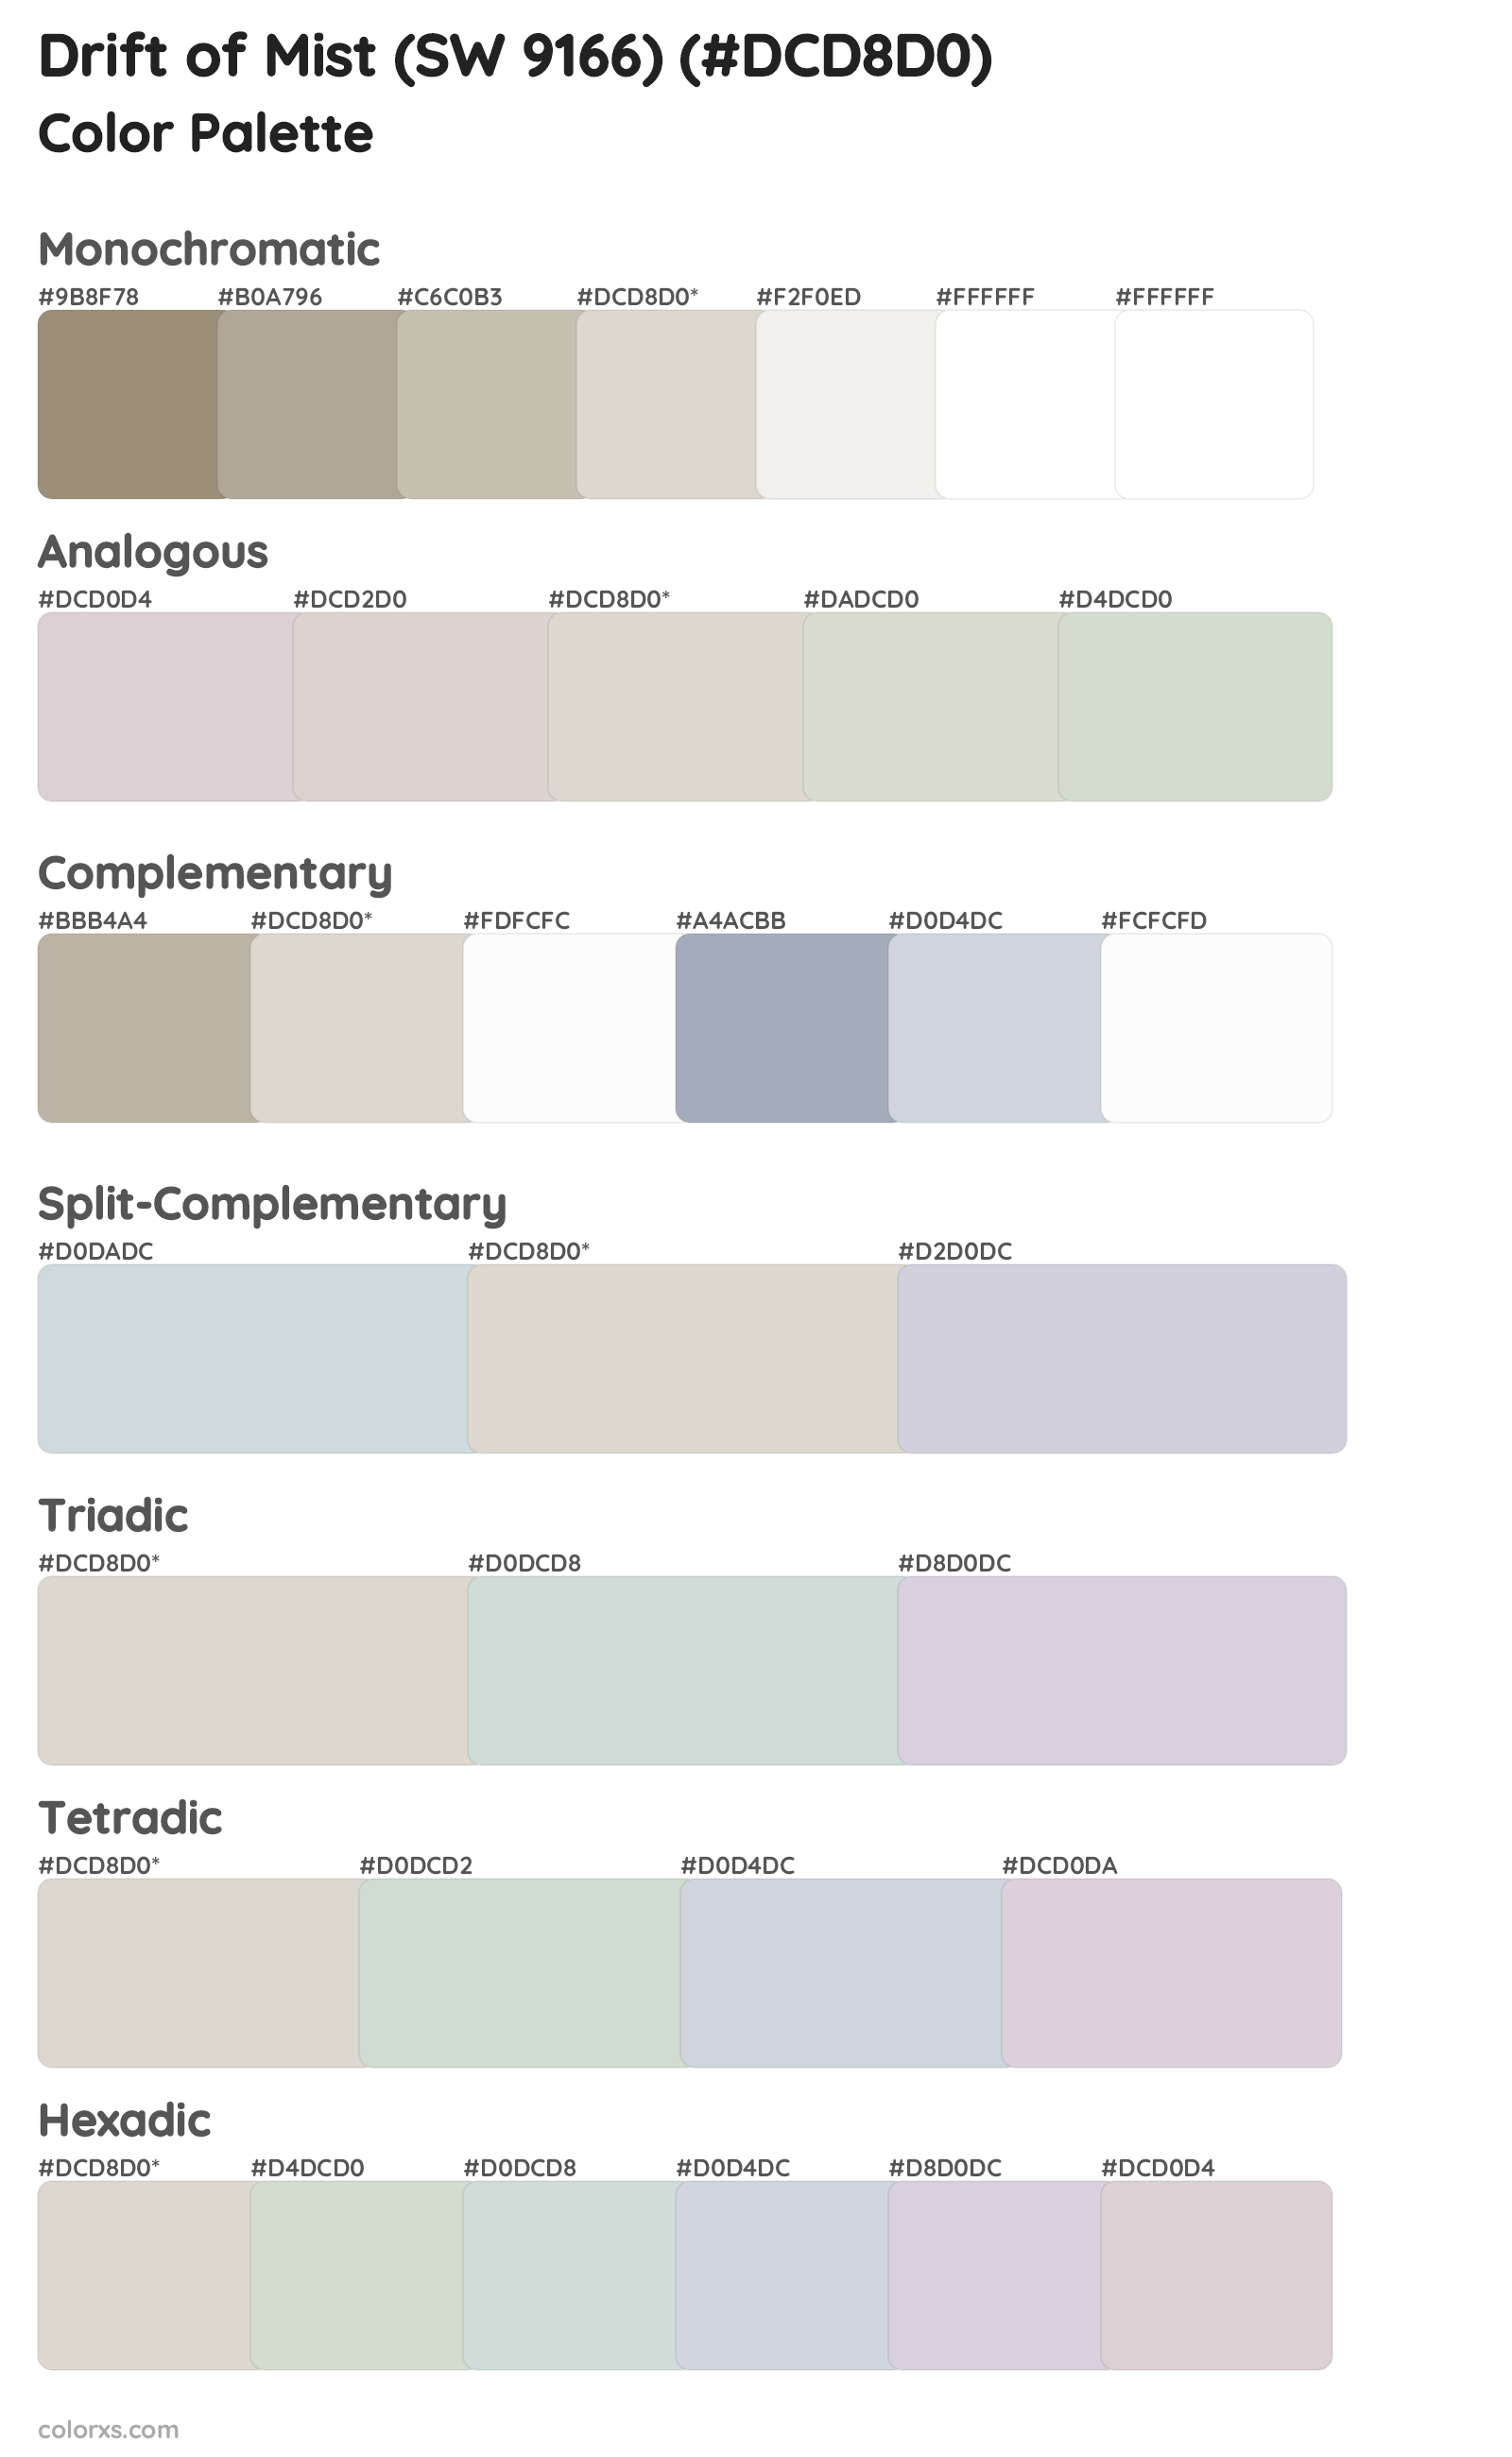 Drift of Mist (SW 9166) Color Scheme Palettes